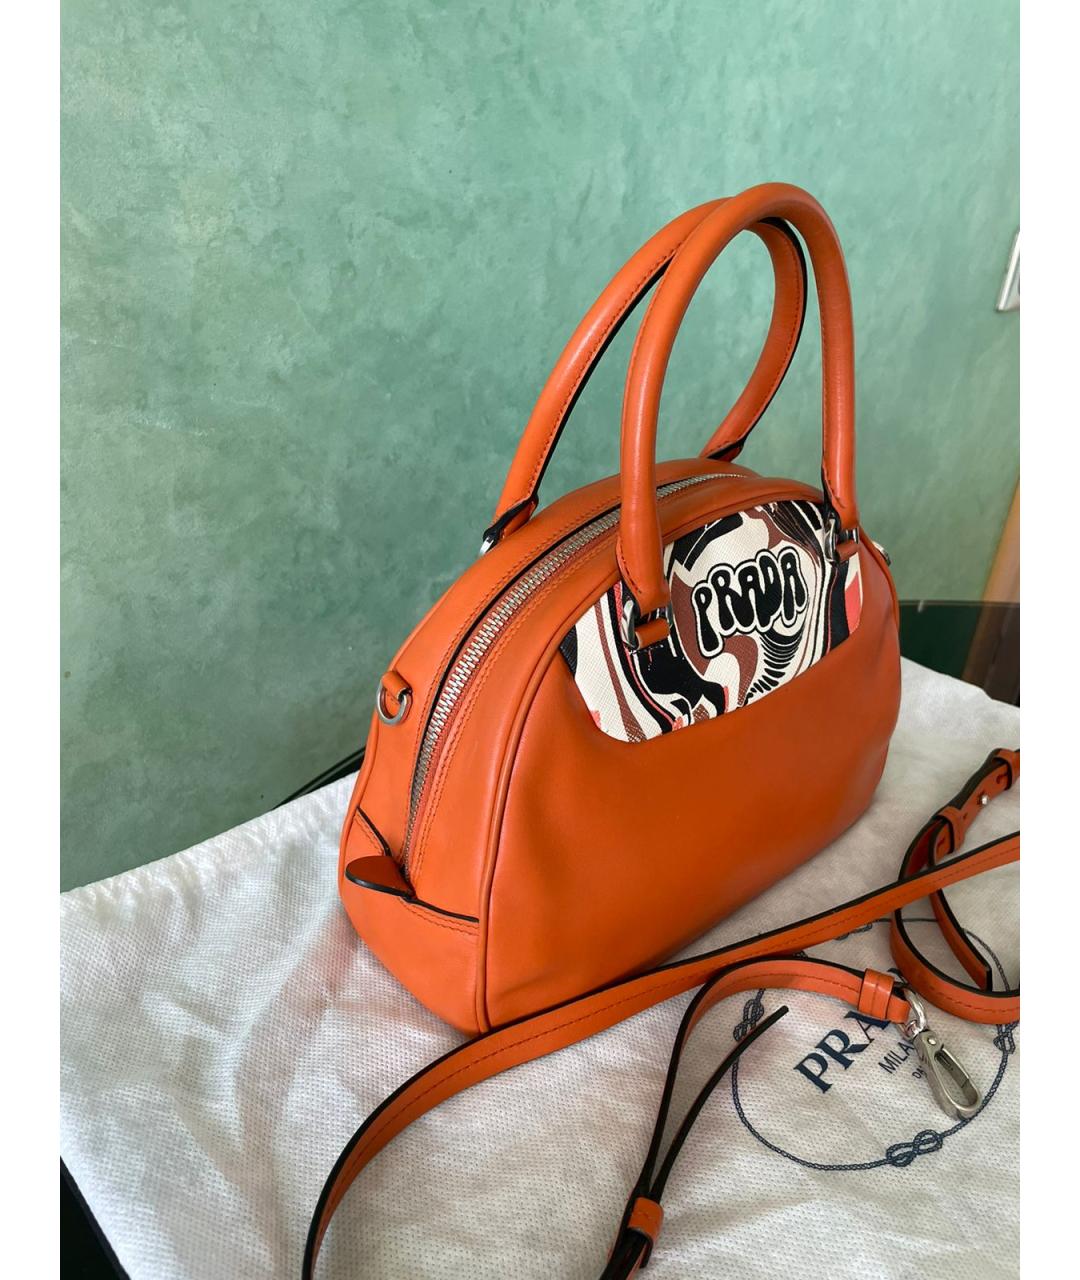 PRADA Оранжевая кожаная сумка с короткими ручками, фото 2